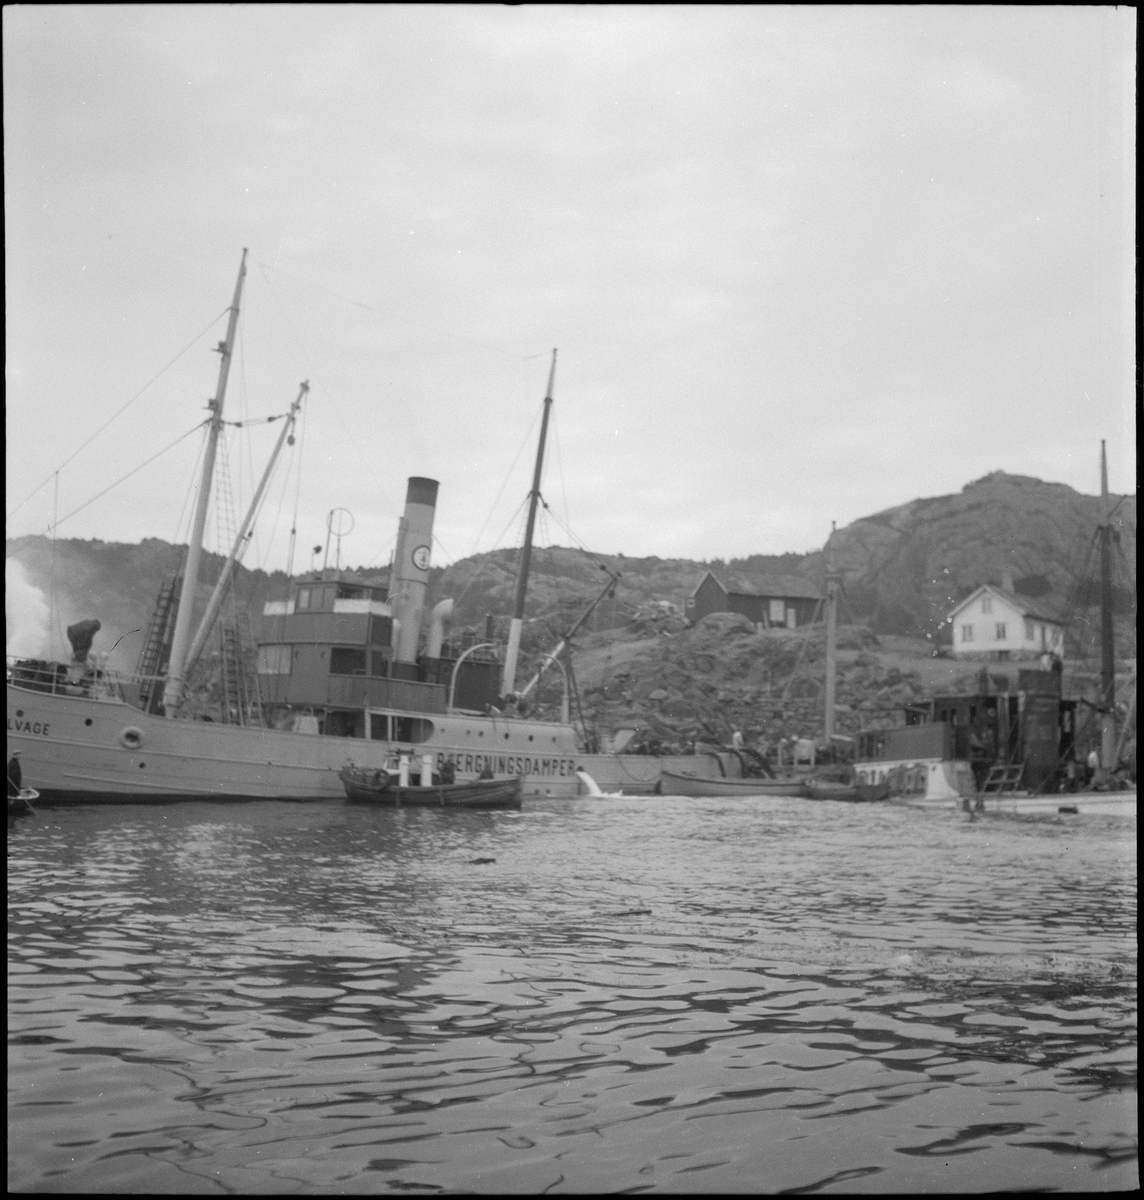 Bergingsdamperne "Salvator" og "Salvage" jobber med heving av fryseskipet "Jørgen Klaus". Det brukes taljer, dykkere og rør som pumper ut vann.